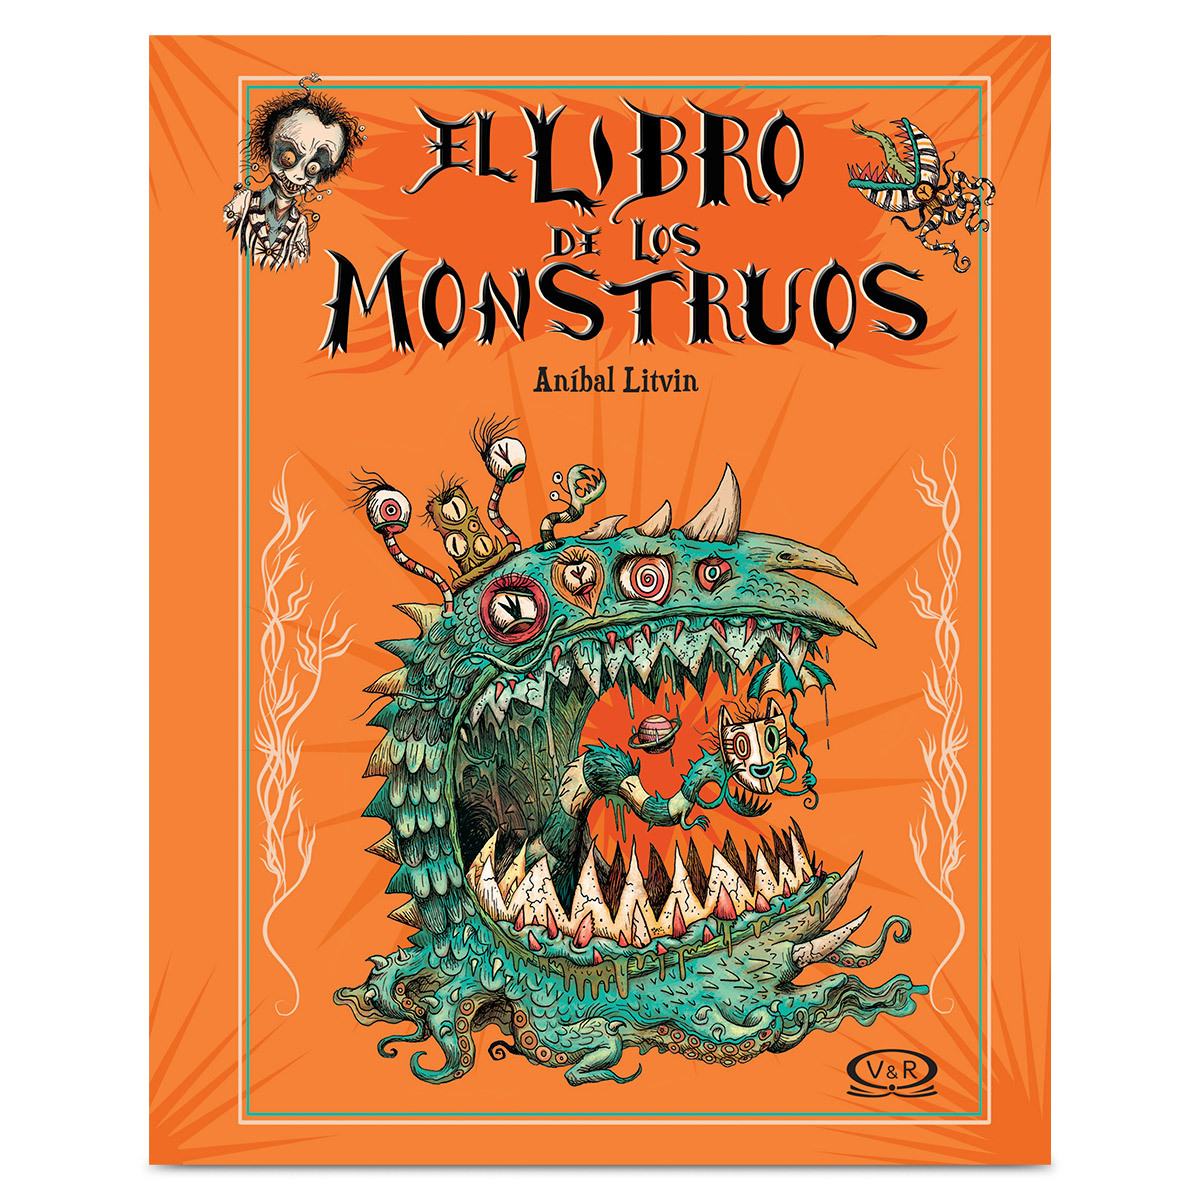 Libro El Libro de los Monstruos Anibal Litvin